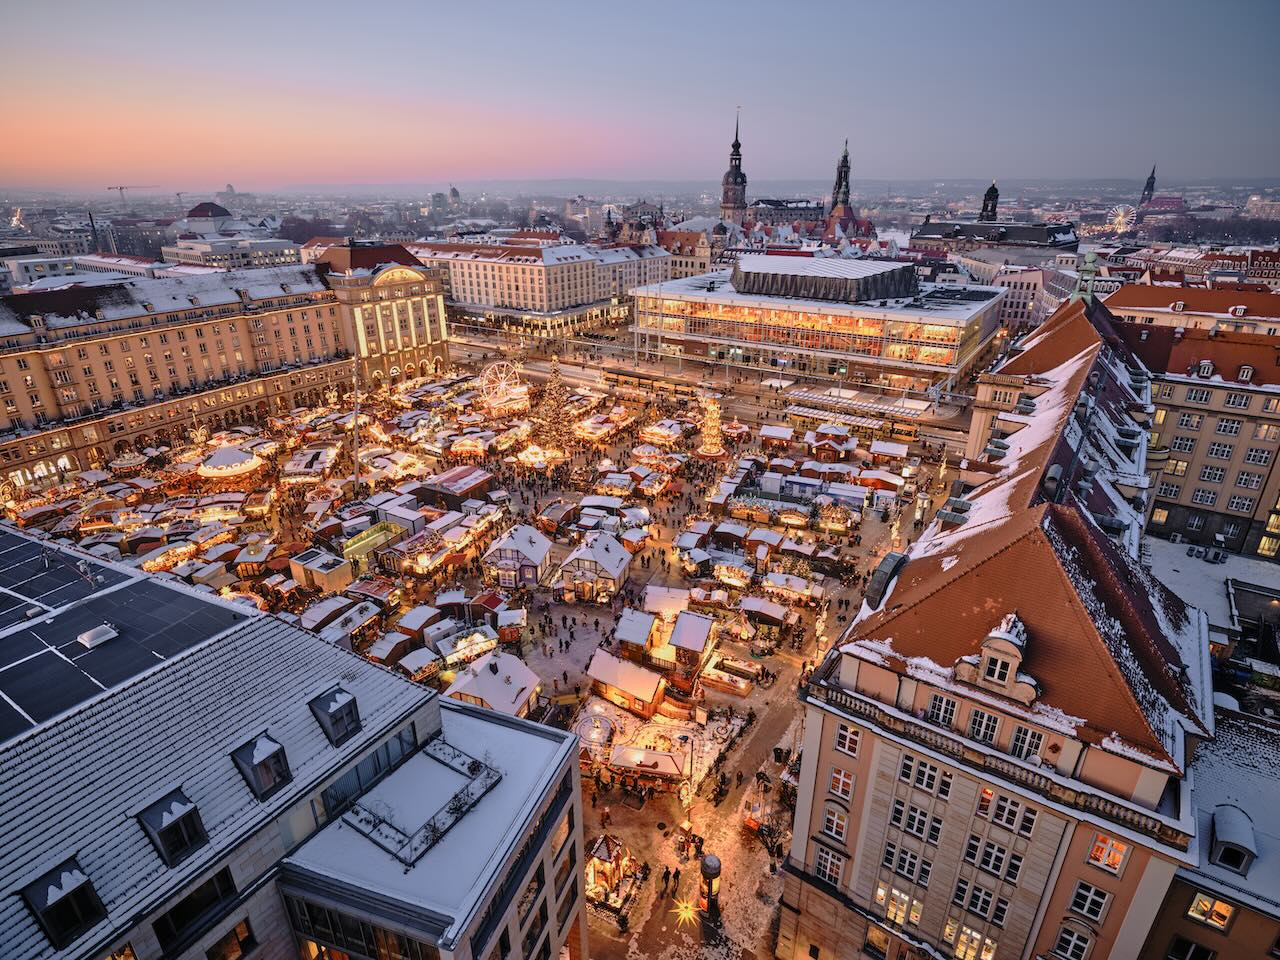 Vistas del 588 Mercado de Navidad de Dresde desde la torre de la Kreuzkirche. Photo: Michael Bader (DML-BY)